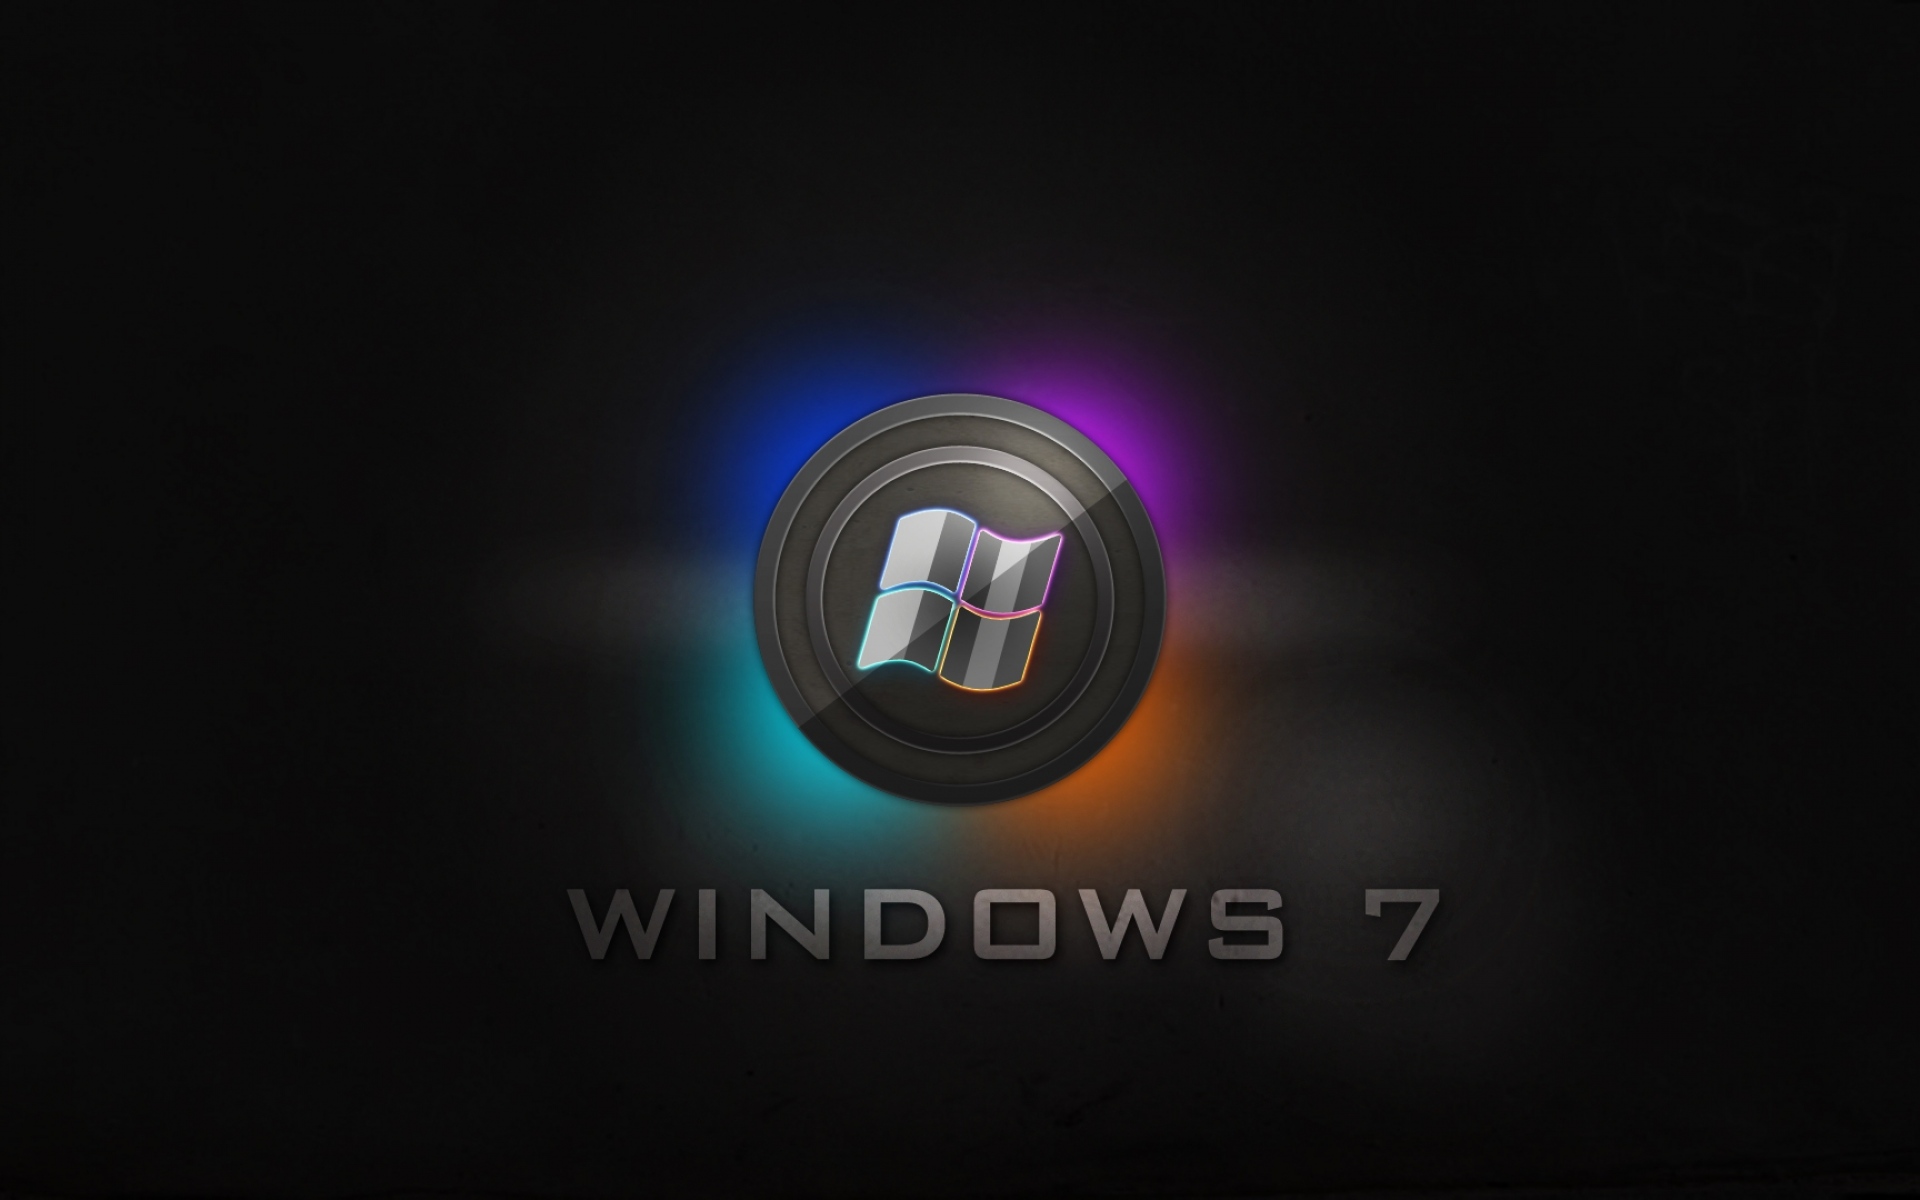 Картинки Окна 7, логотип, синий, оранжевый, сталь фото и обои на рабочий стол